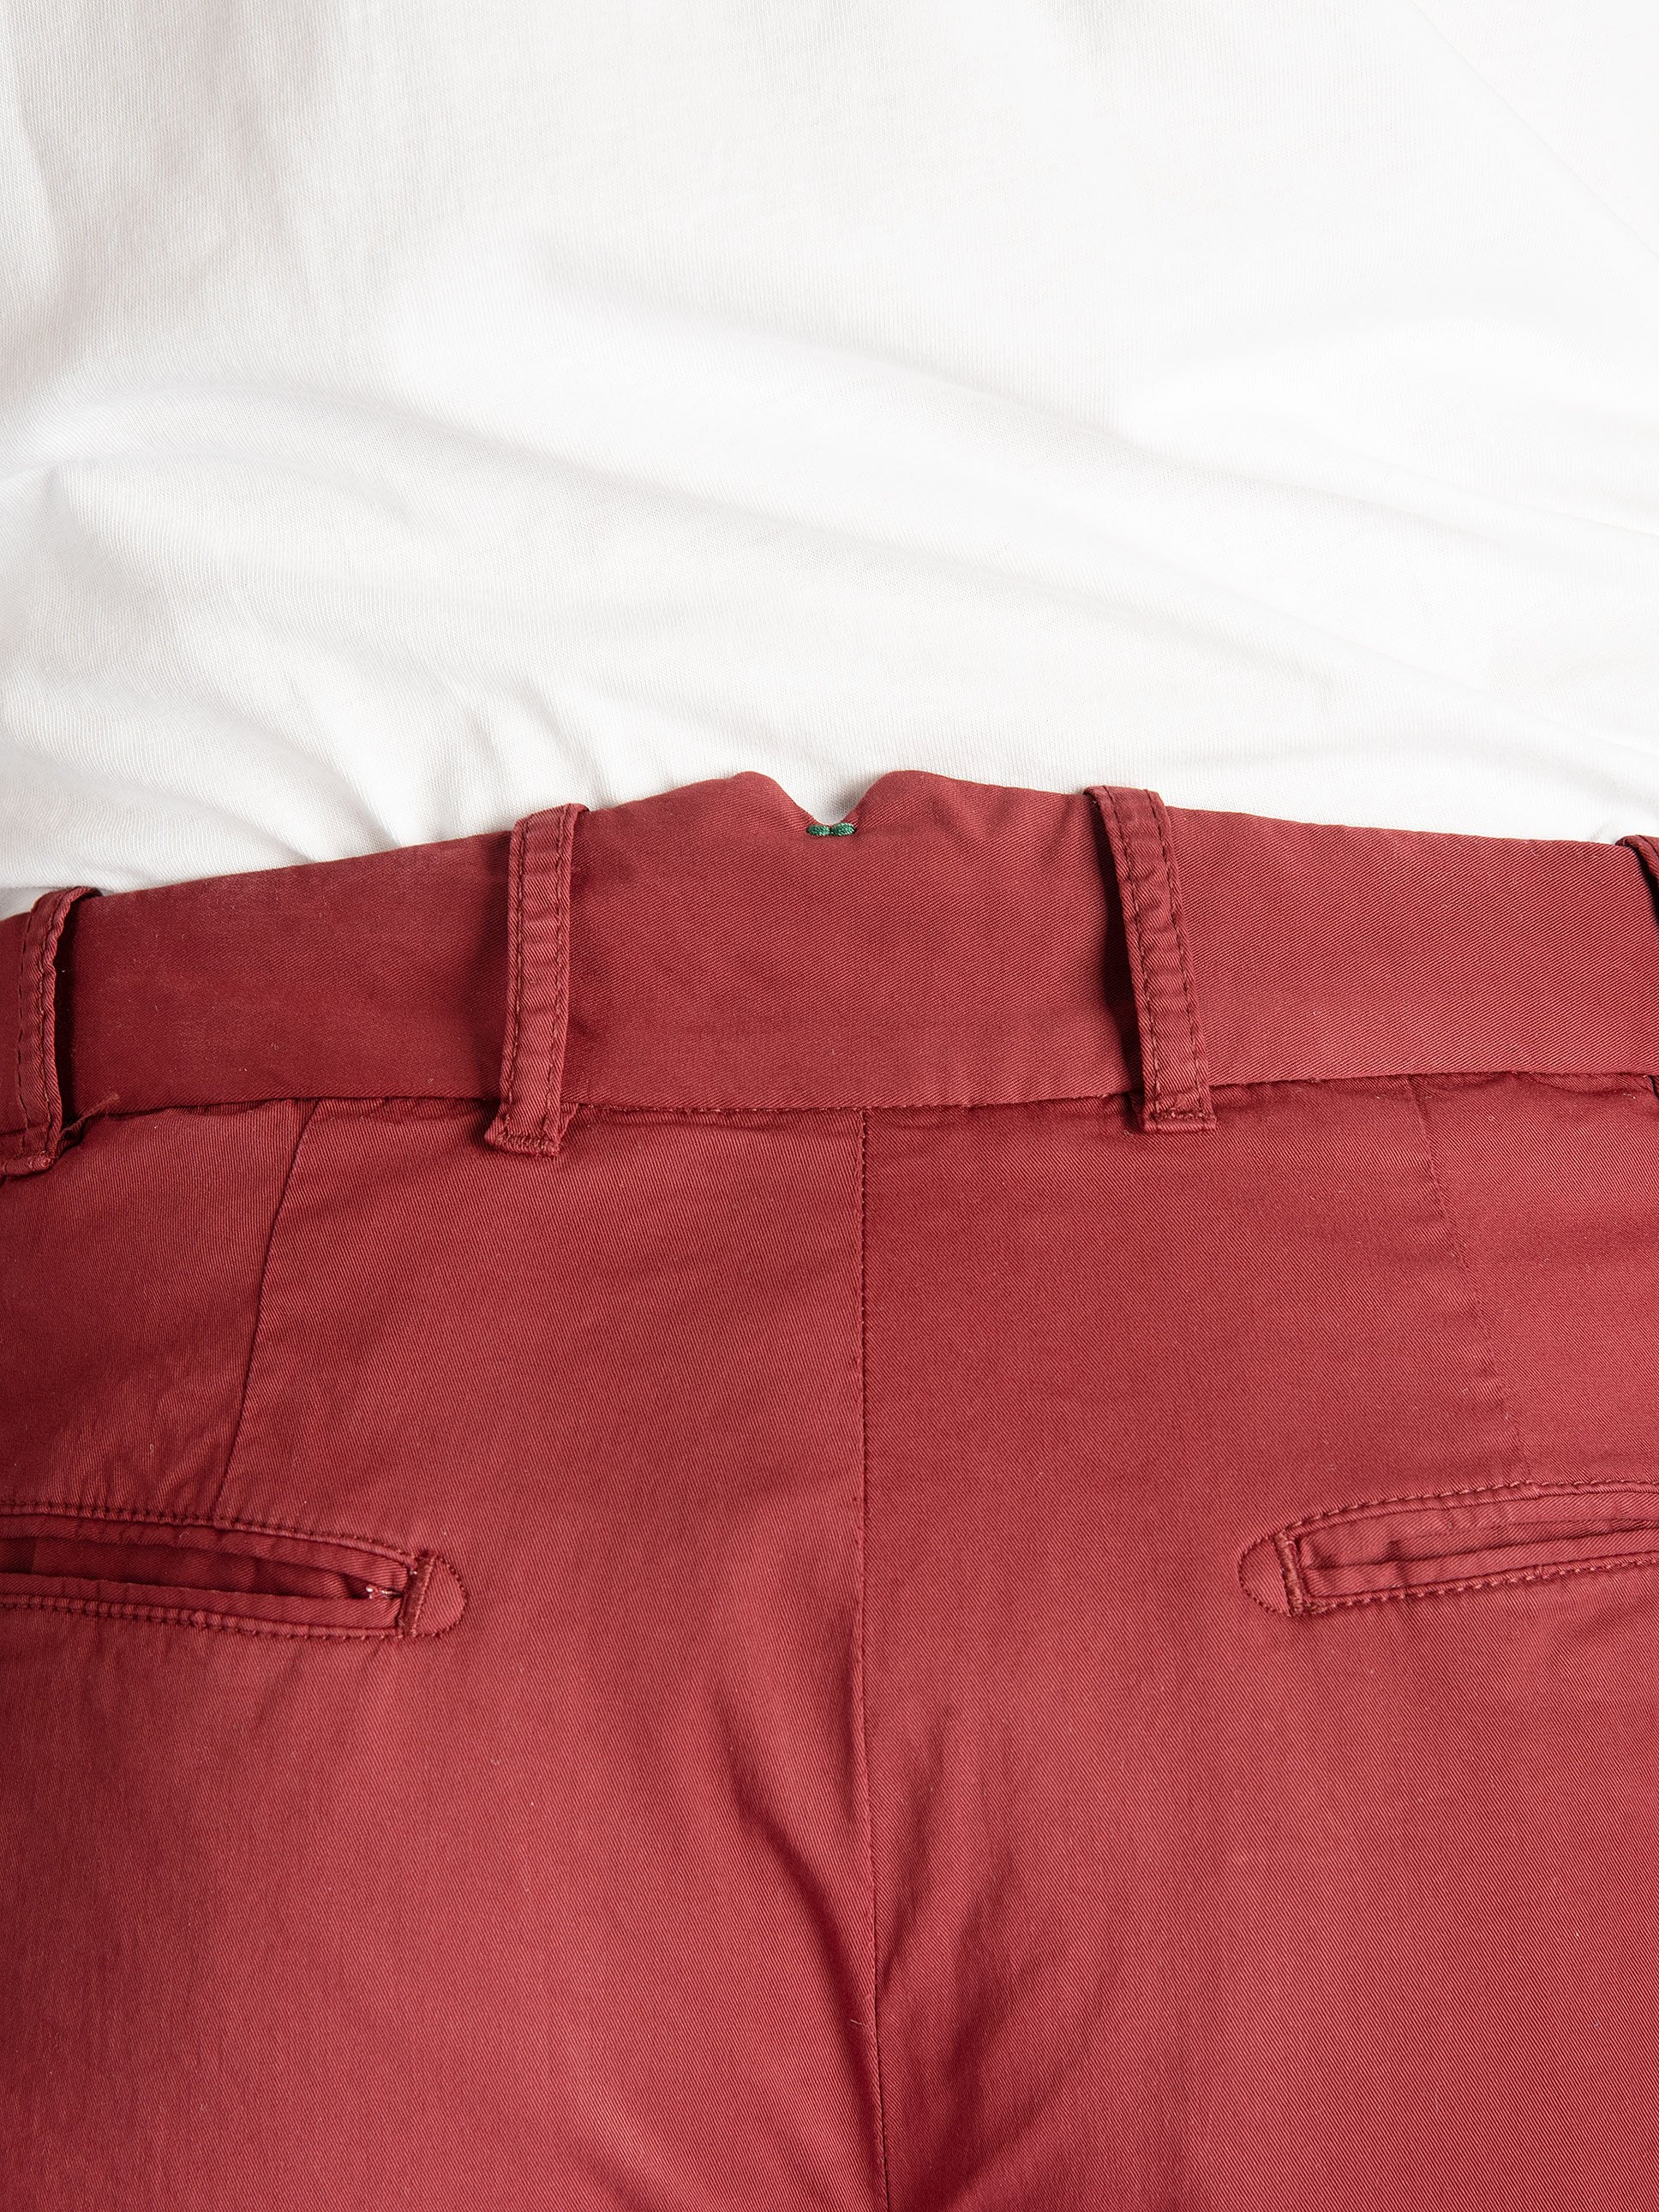 Pantalone 'Retro' Gabardina - Rosso